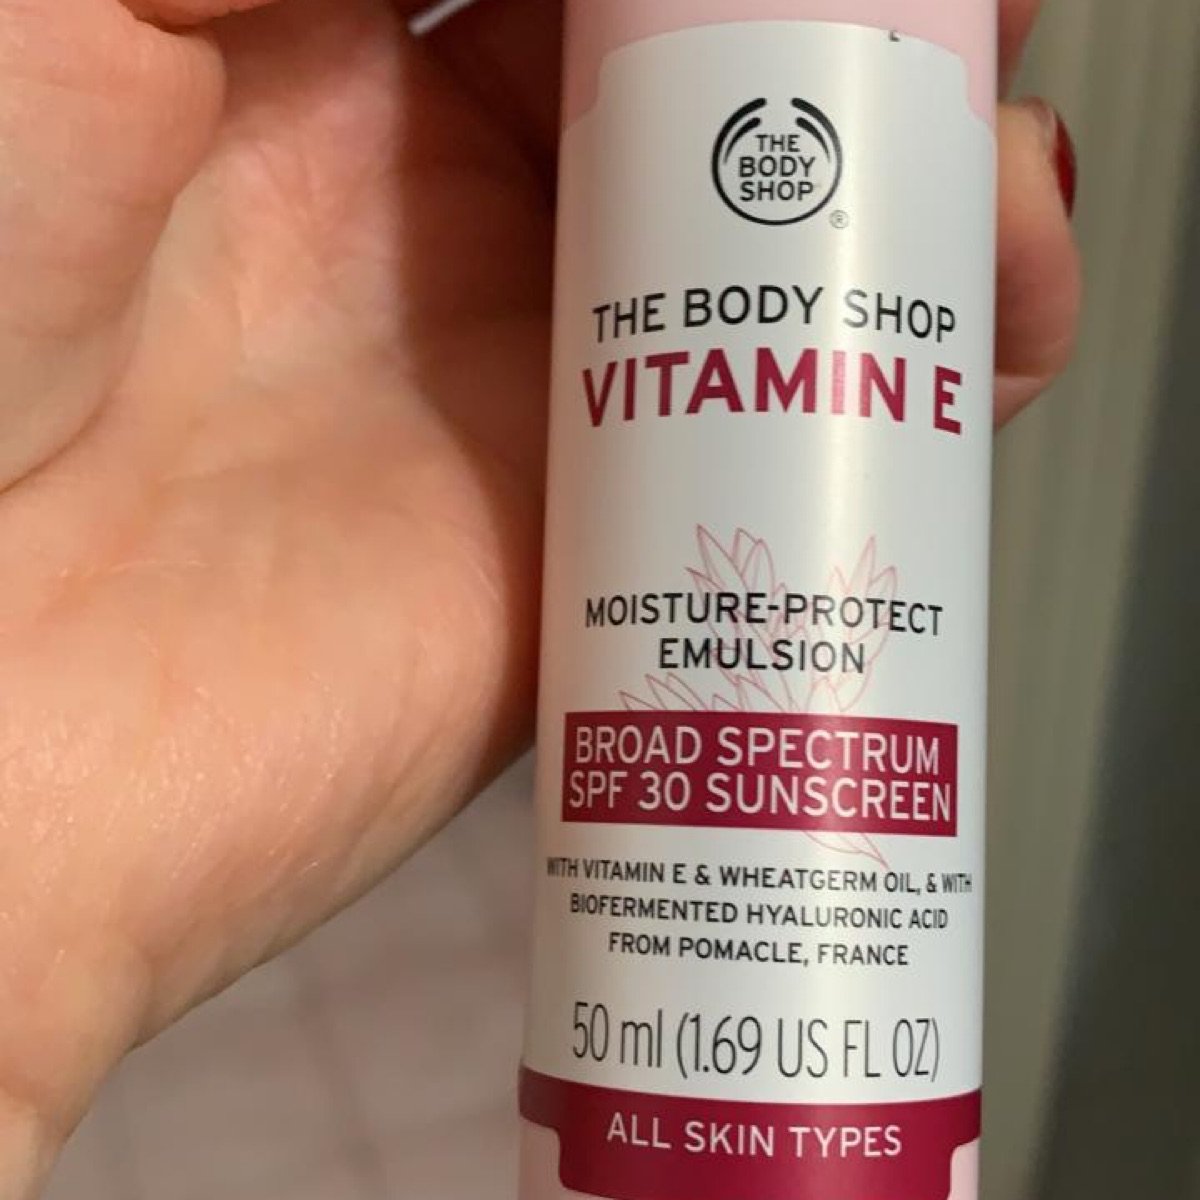 The Body Shop Vitamin E Moisture-Protect Emulsion Review | abillion